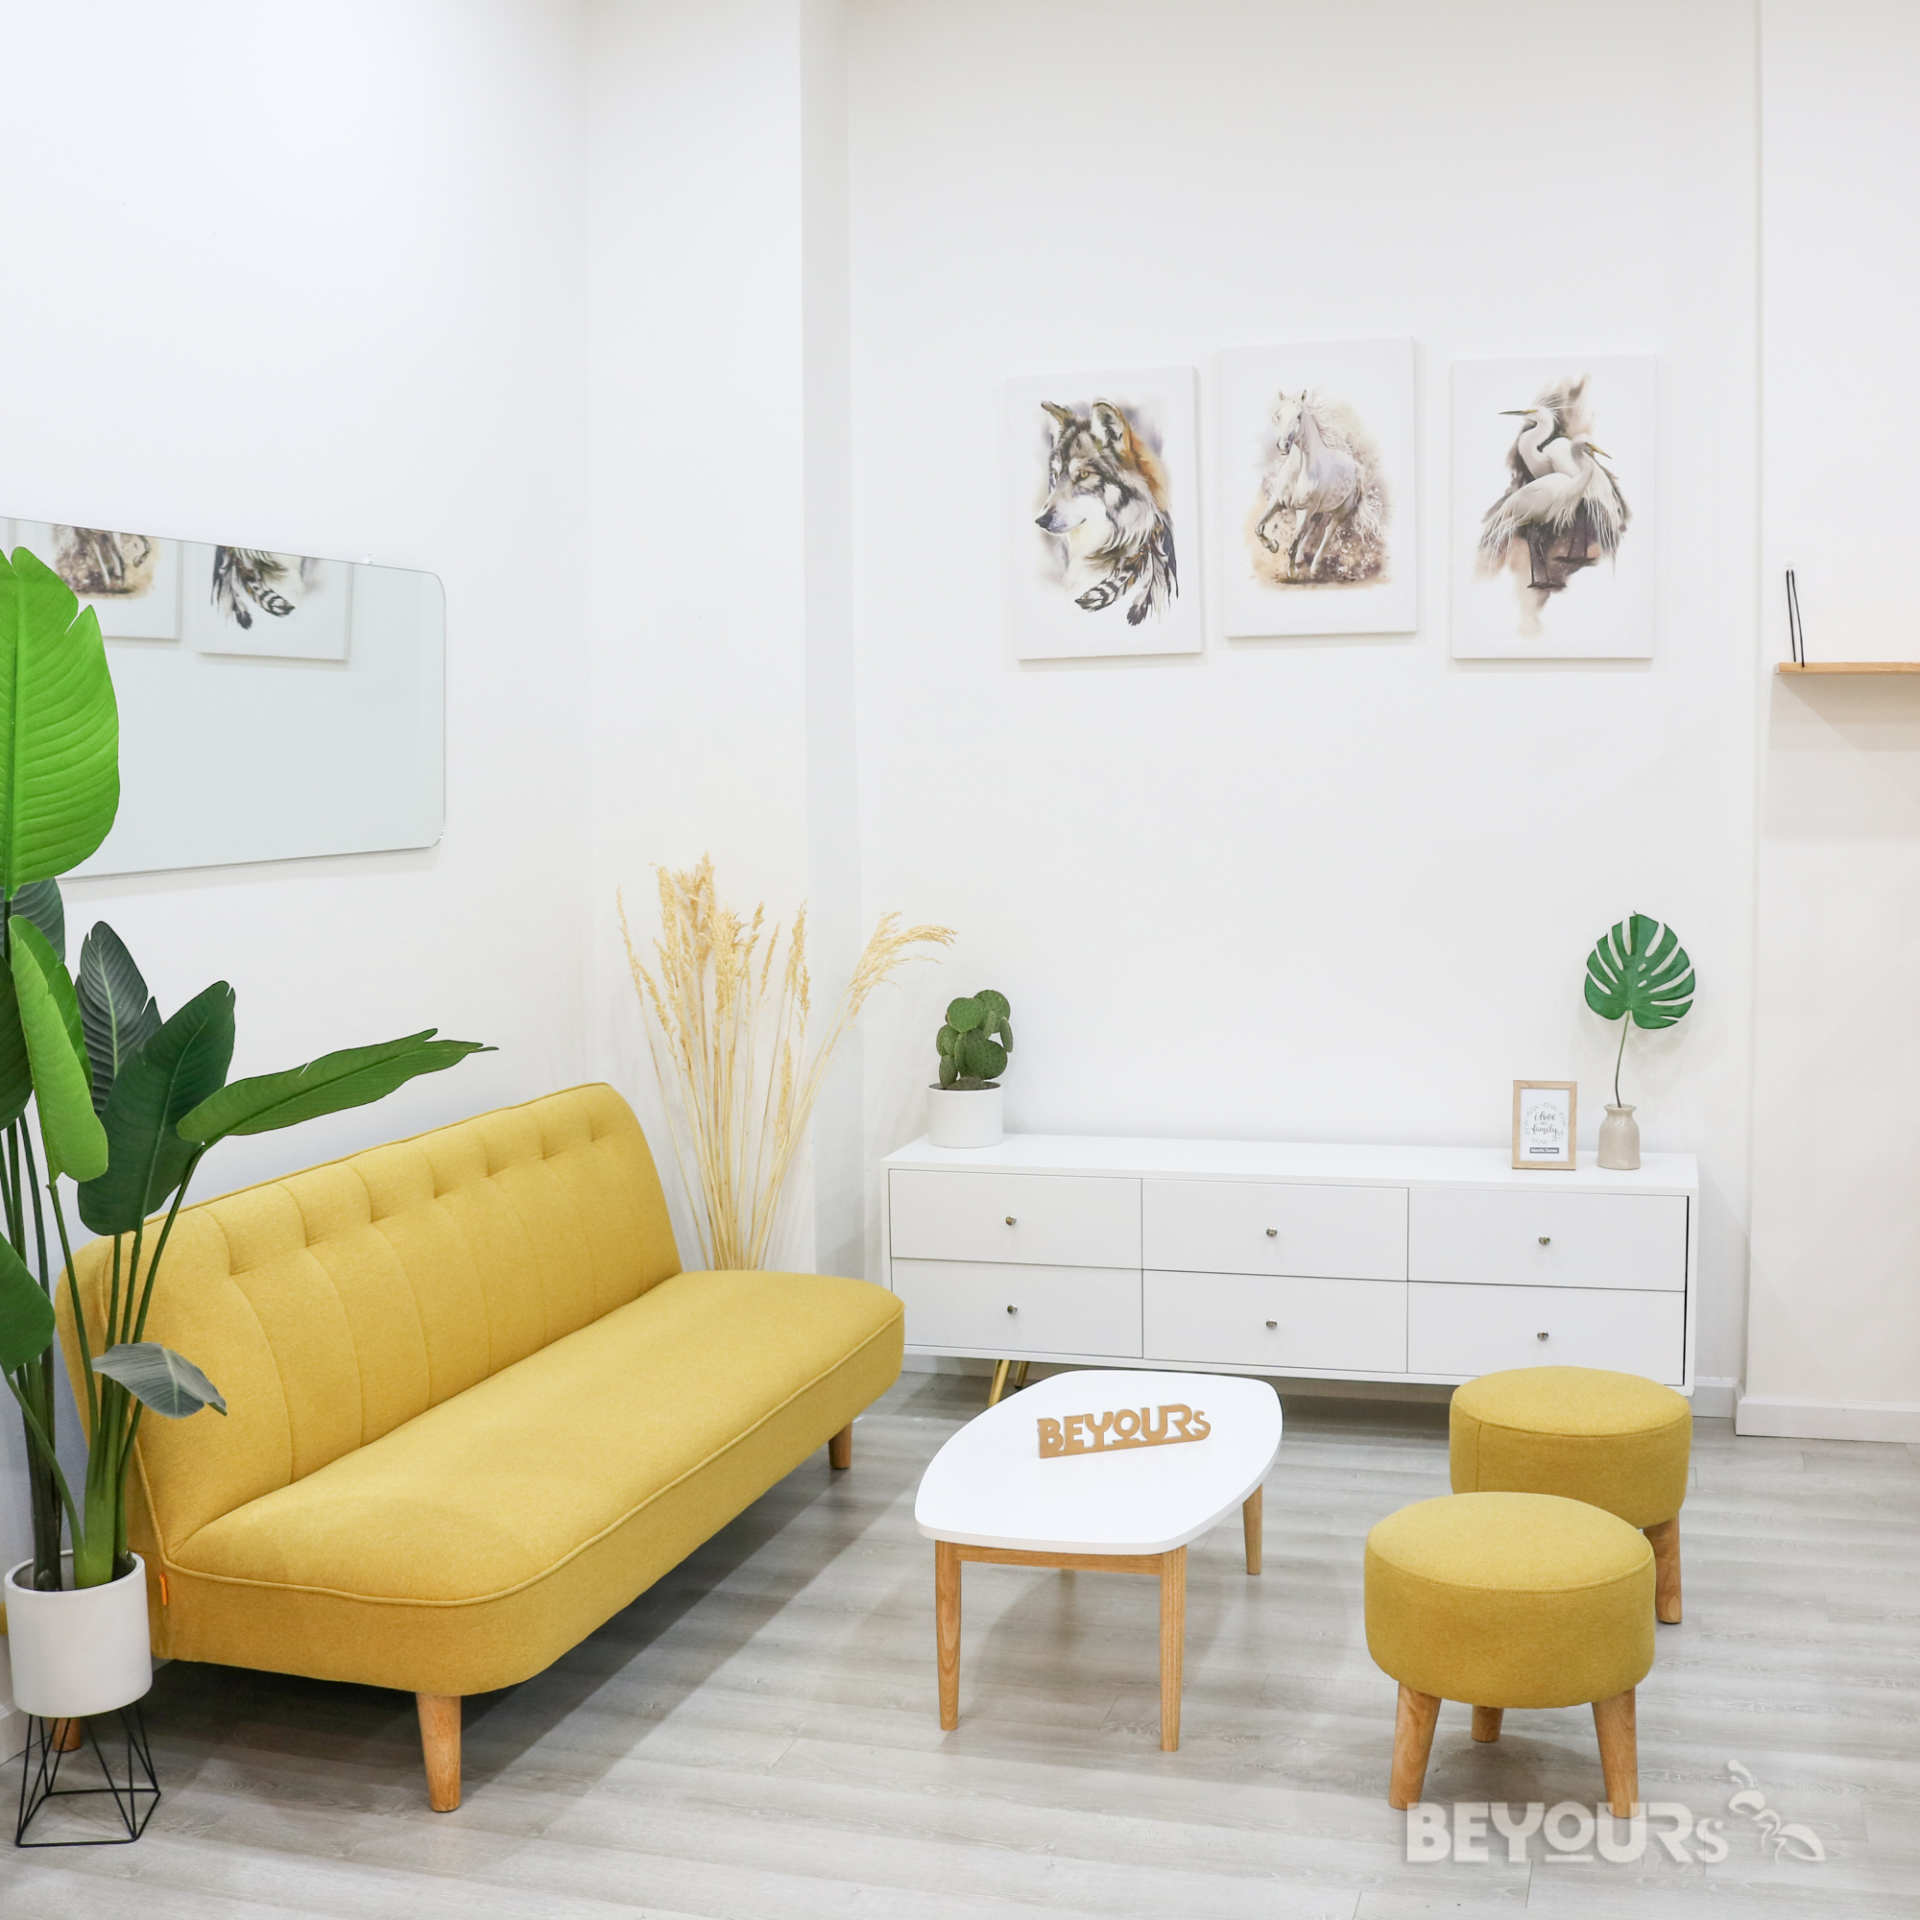 Với phòng khách nhỏ và phong cách nội thất tối giản, bạn có thể sử dụng những đồ nội thất cơ bản và chỉ giữ lại những đồ thiết yếu nhất. Màu sắc chủ đạo là màu trắng, đen và xám để tạo vẻ đẹp tối giản và thanh lịch cho không gian phòng khách nhỏ nhà bạn.